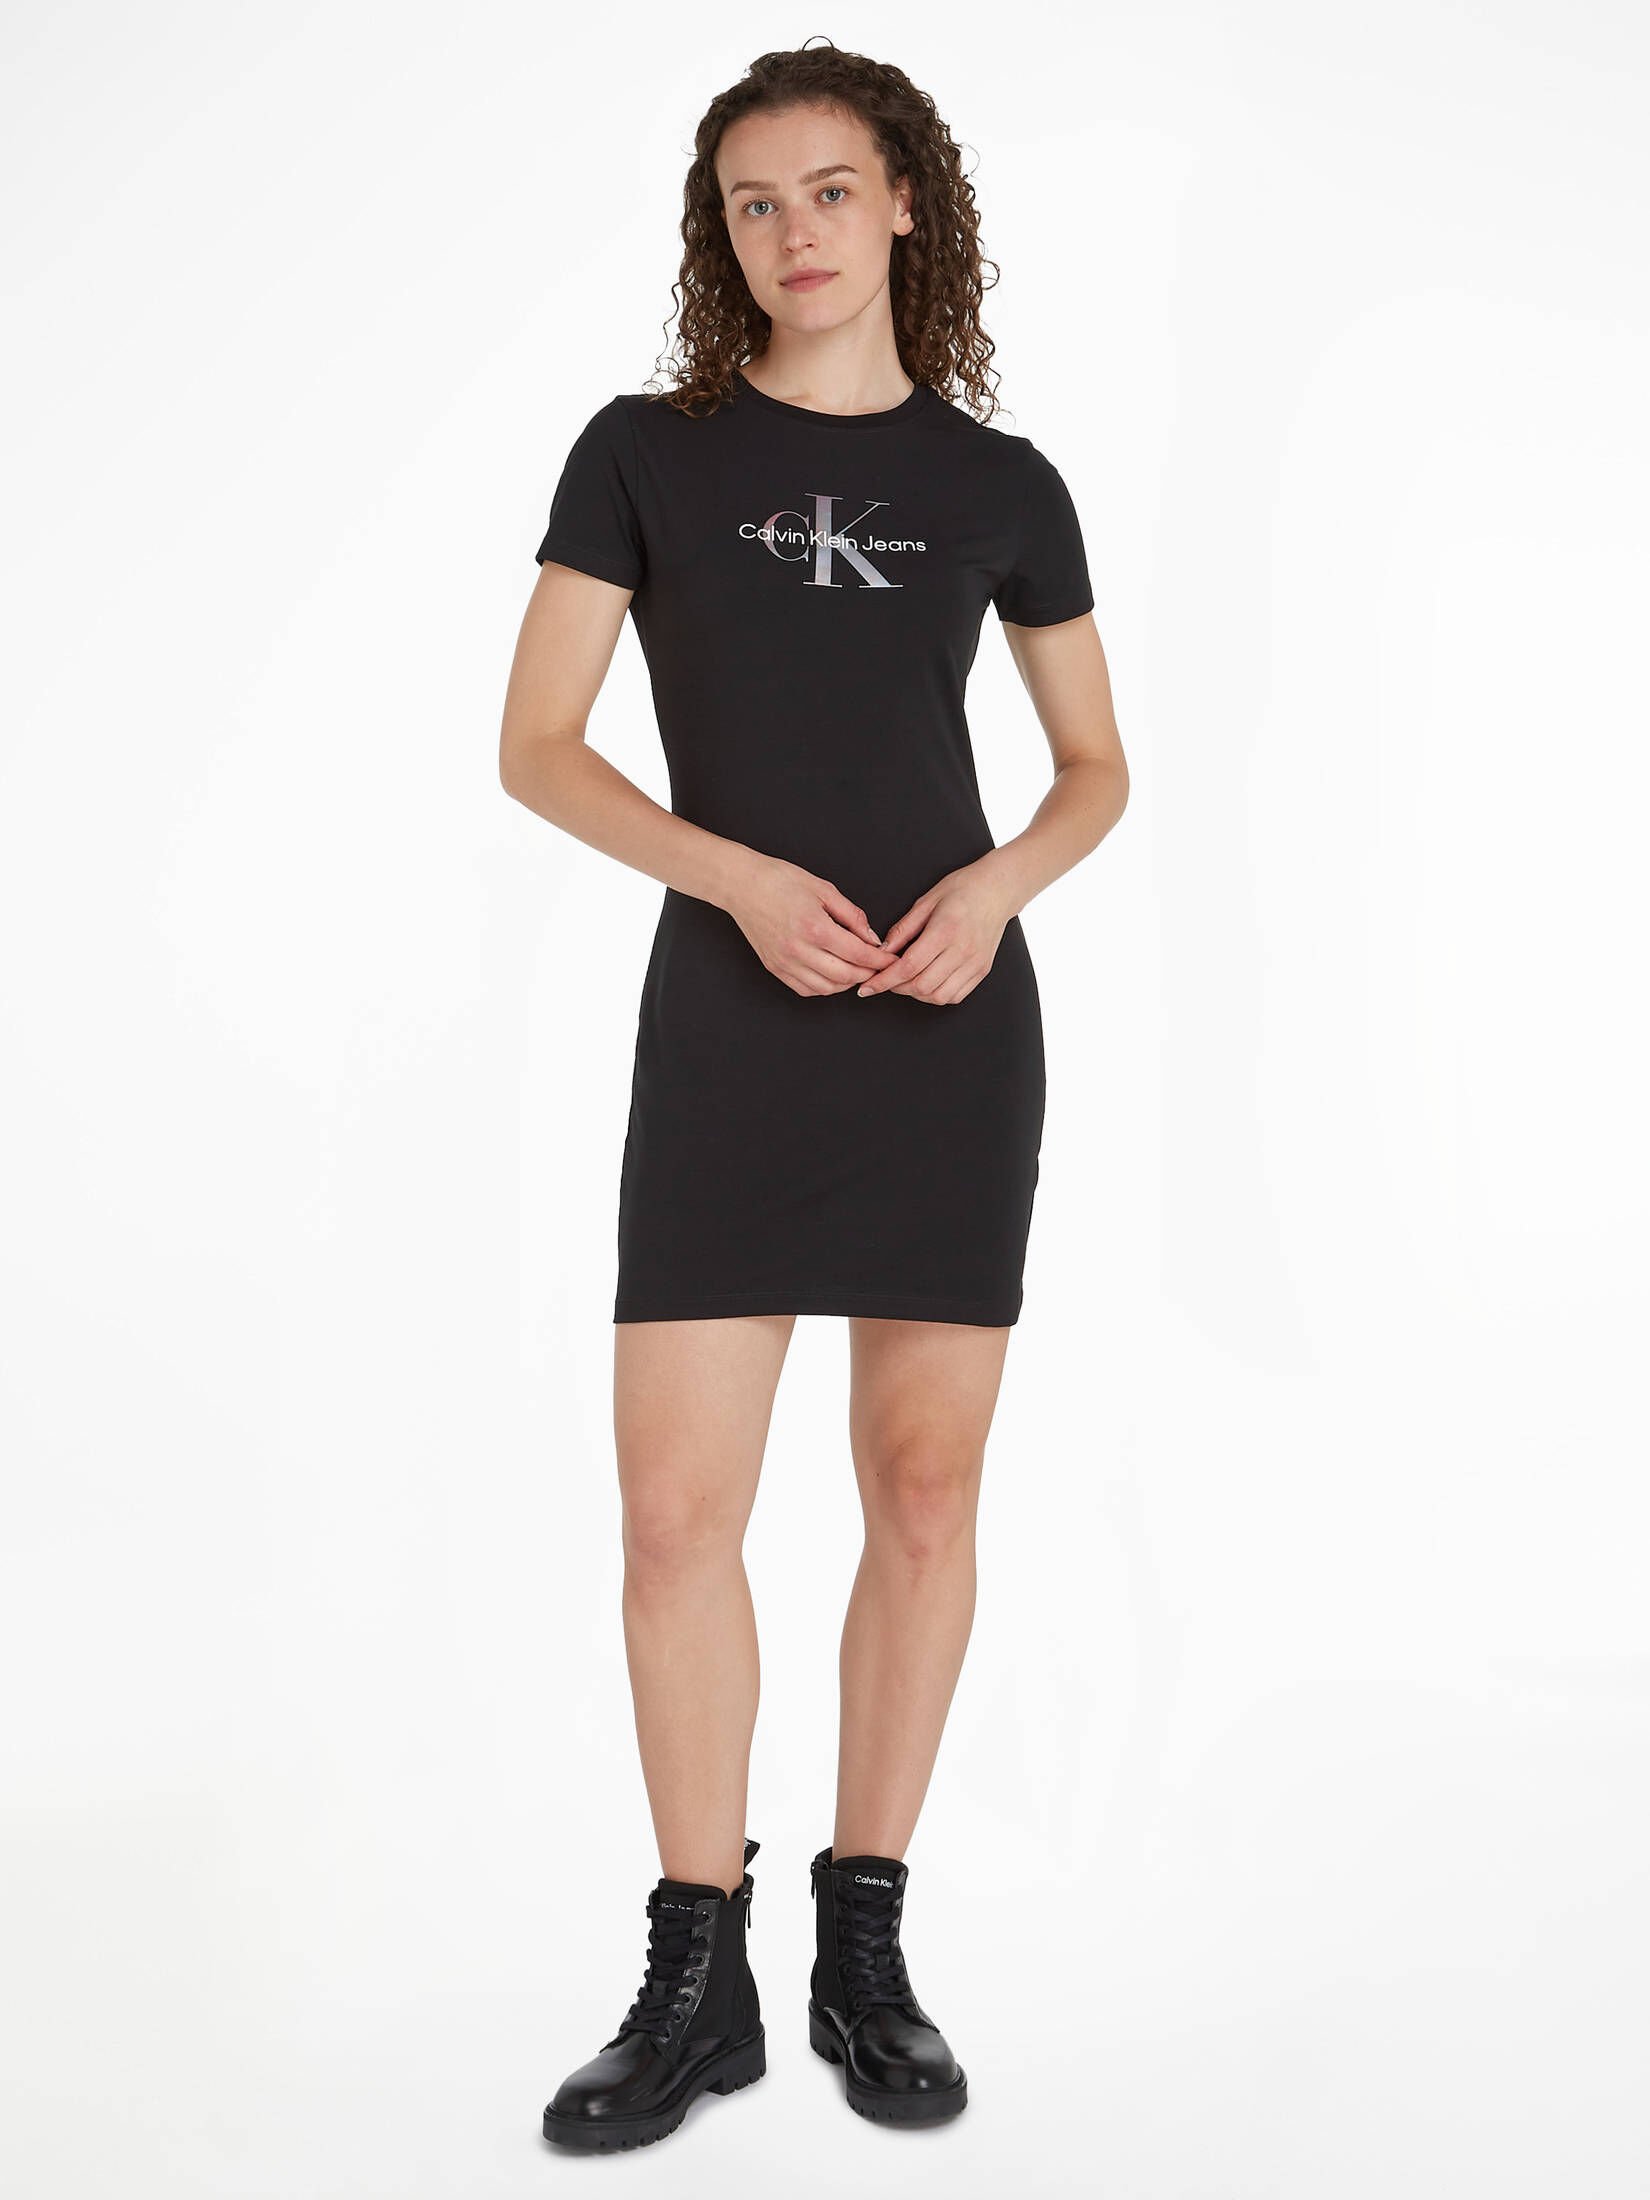 CALVIN KLEIN JEANS Damen | mit Monogramm kaufen T-Shirt-Kleid engelhorn